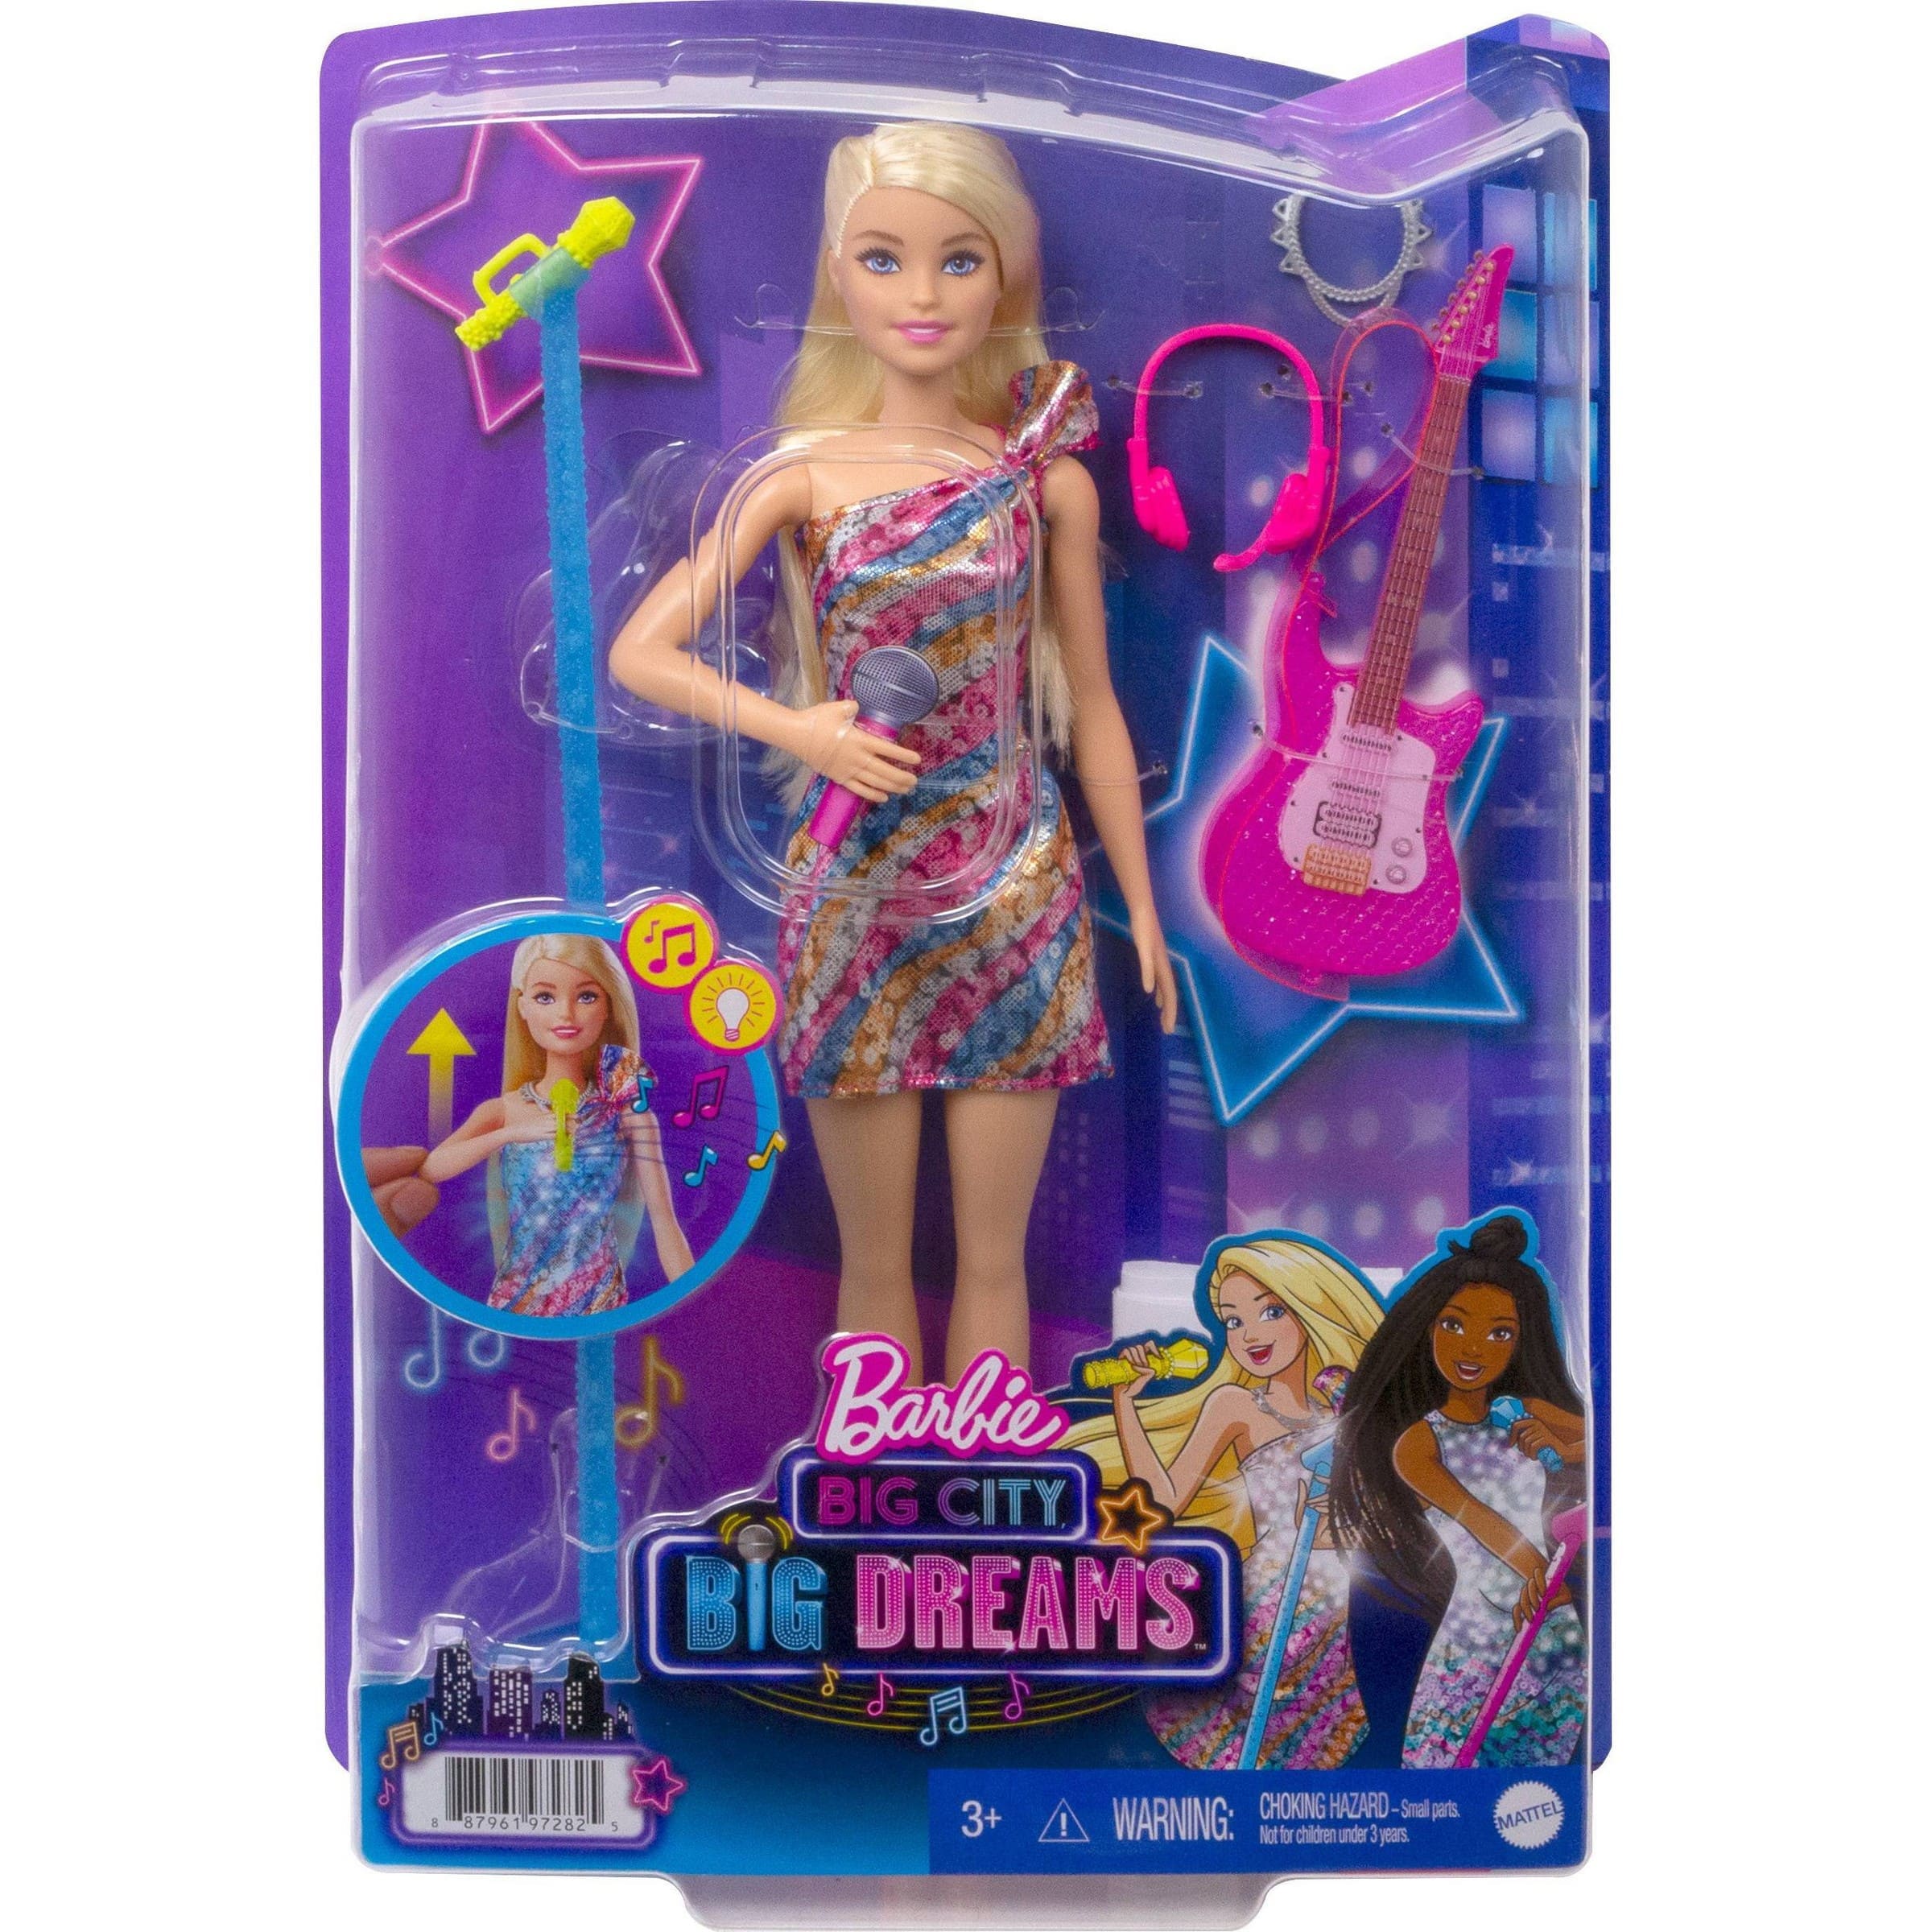 MATTEL Barbie 芭比Big City Big Dreams™音樂會套裝連娃娃 (MBB97282)